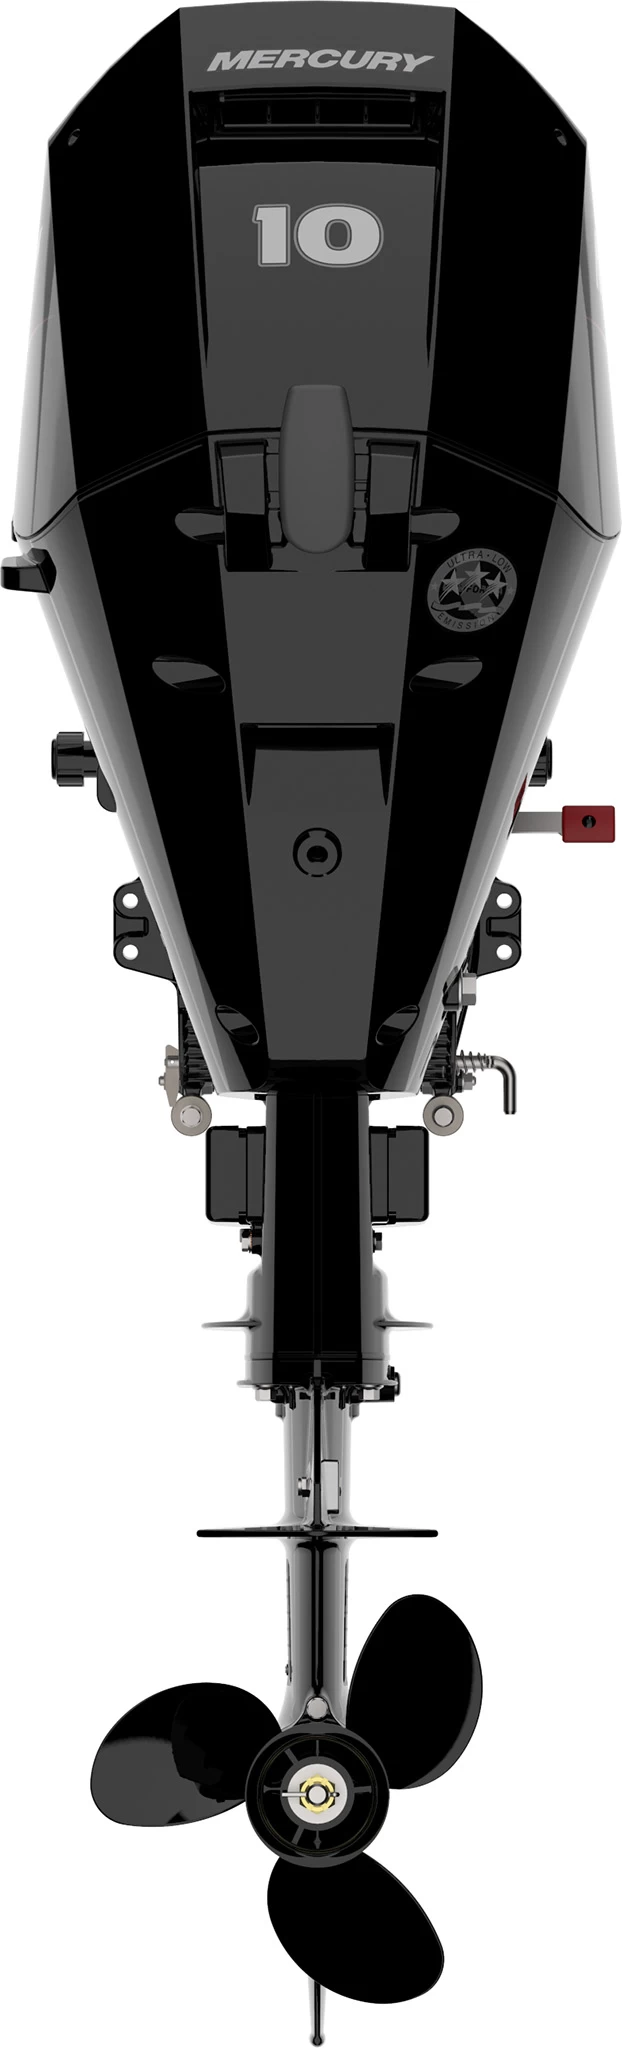 Четырехтактный лодочный мотор MERCURY F10 E - 2